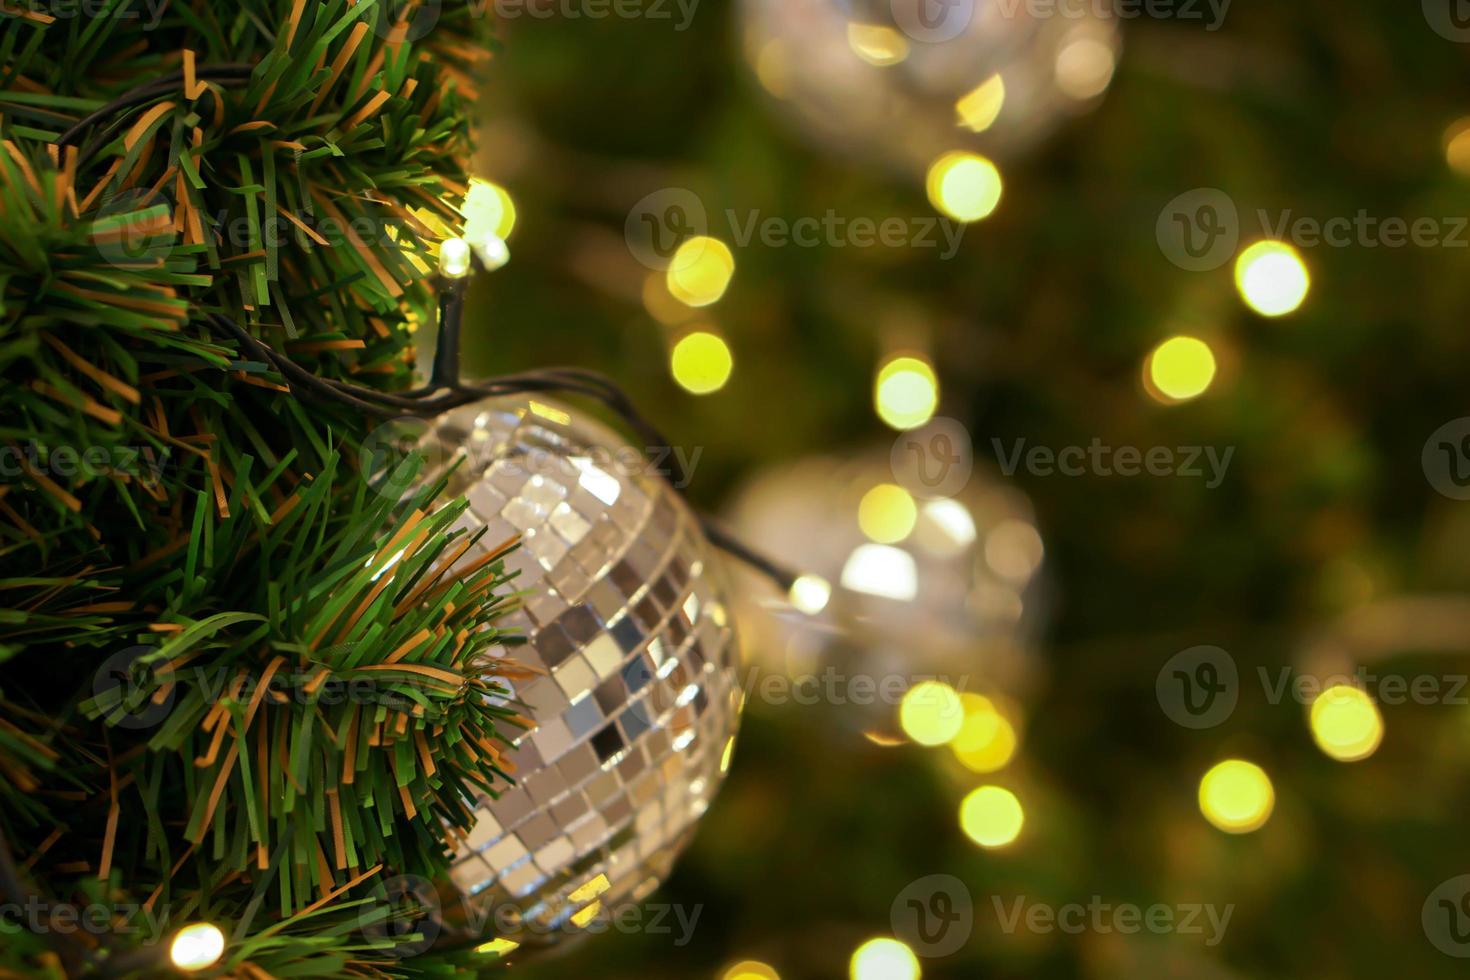 bola de cristal decorada em pinheiro no dia de natal com fundo desfocado e bokeh de iluminação de natal. foto